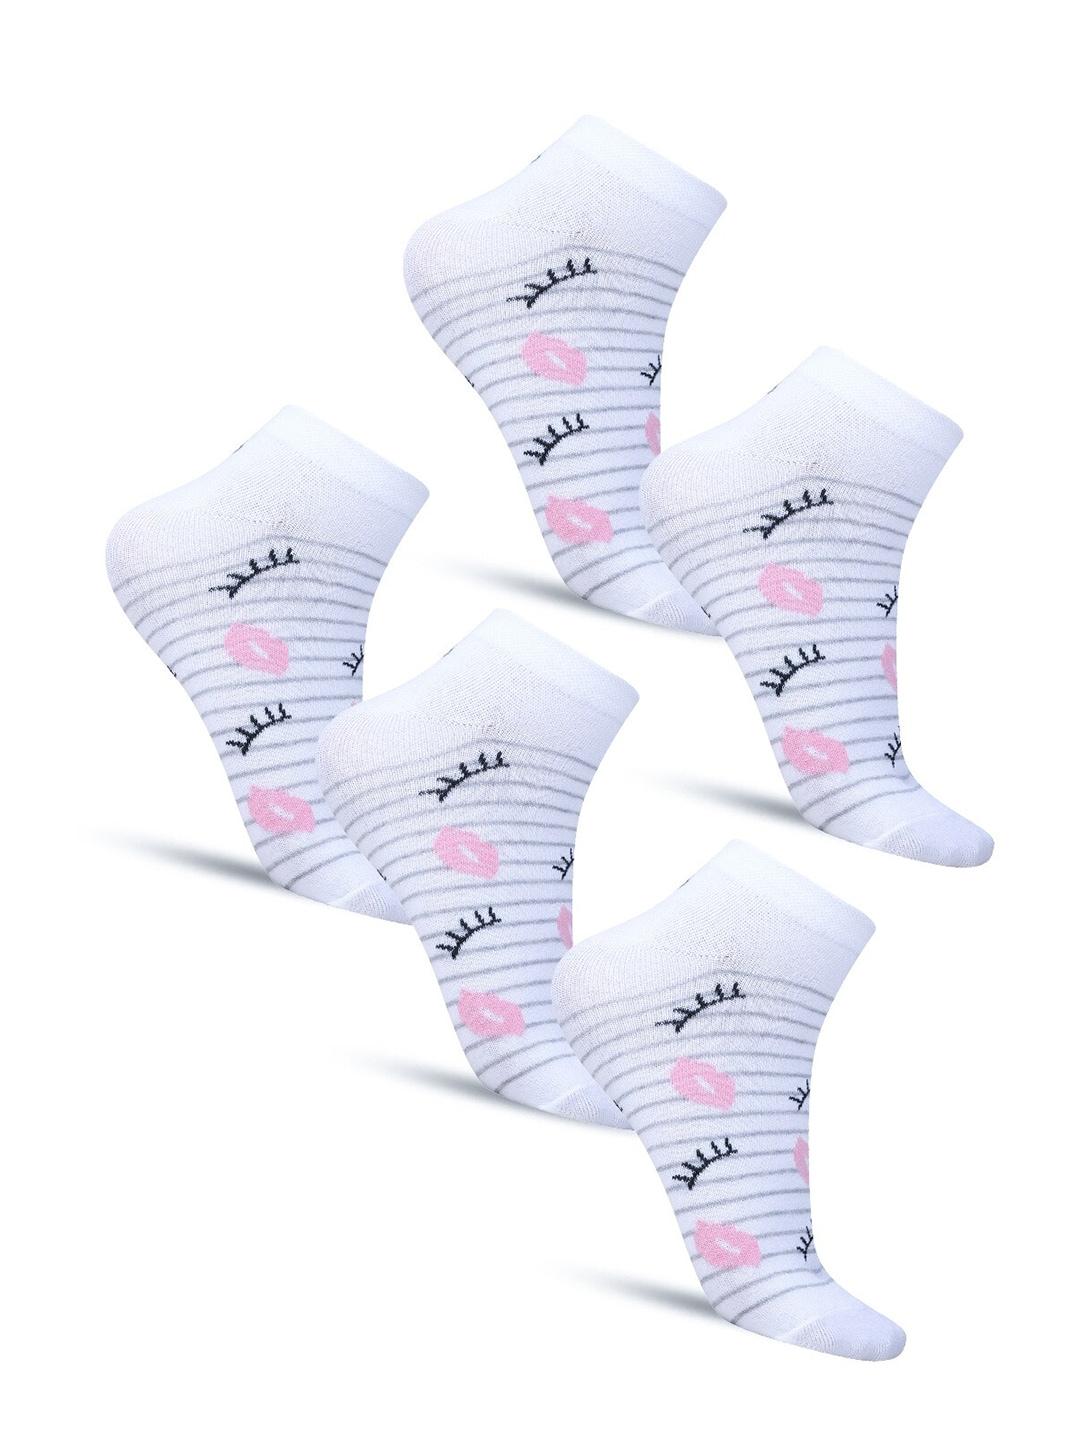 dollar-socks-pack-of-5-cotton-ankle-length-socks